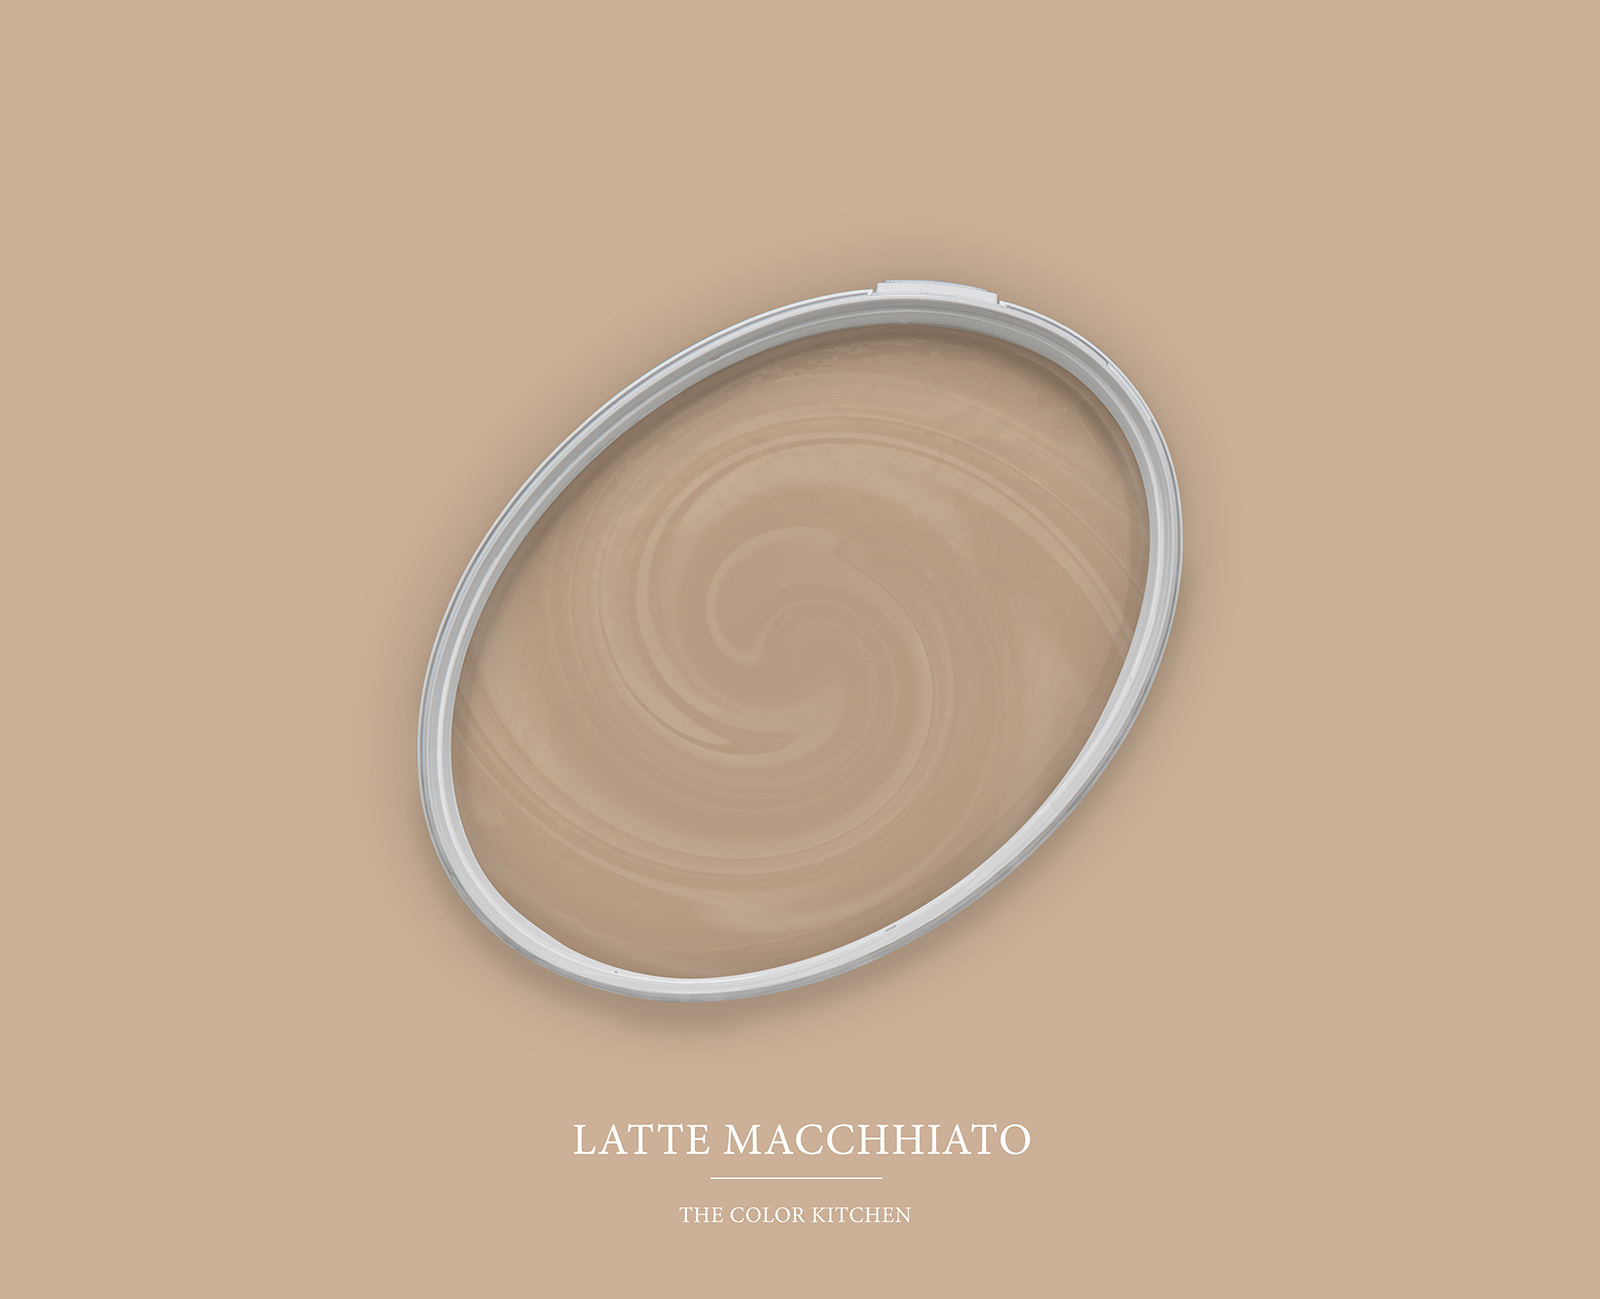 Pintura mural TCK6010 »Latte Macchhiato« en beige natural – 5,0 litro
